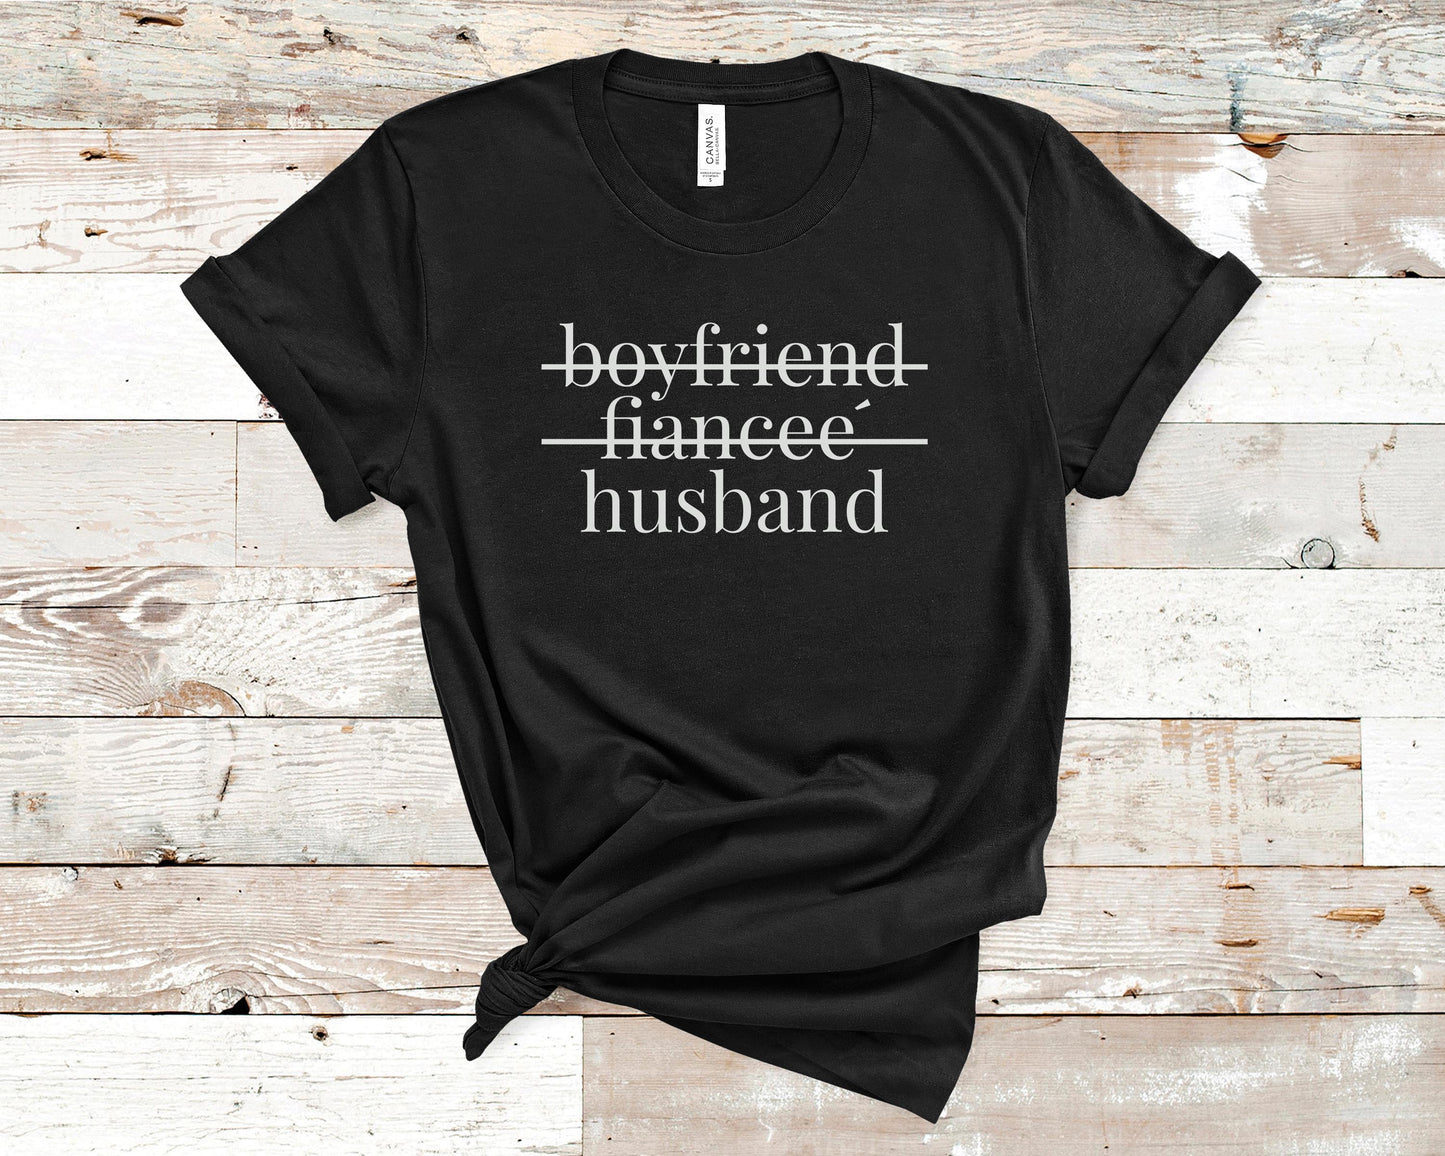 Boyfriend Fiance Husband - Bride/Wedding